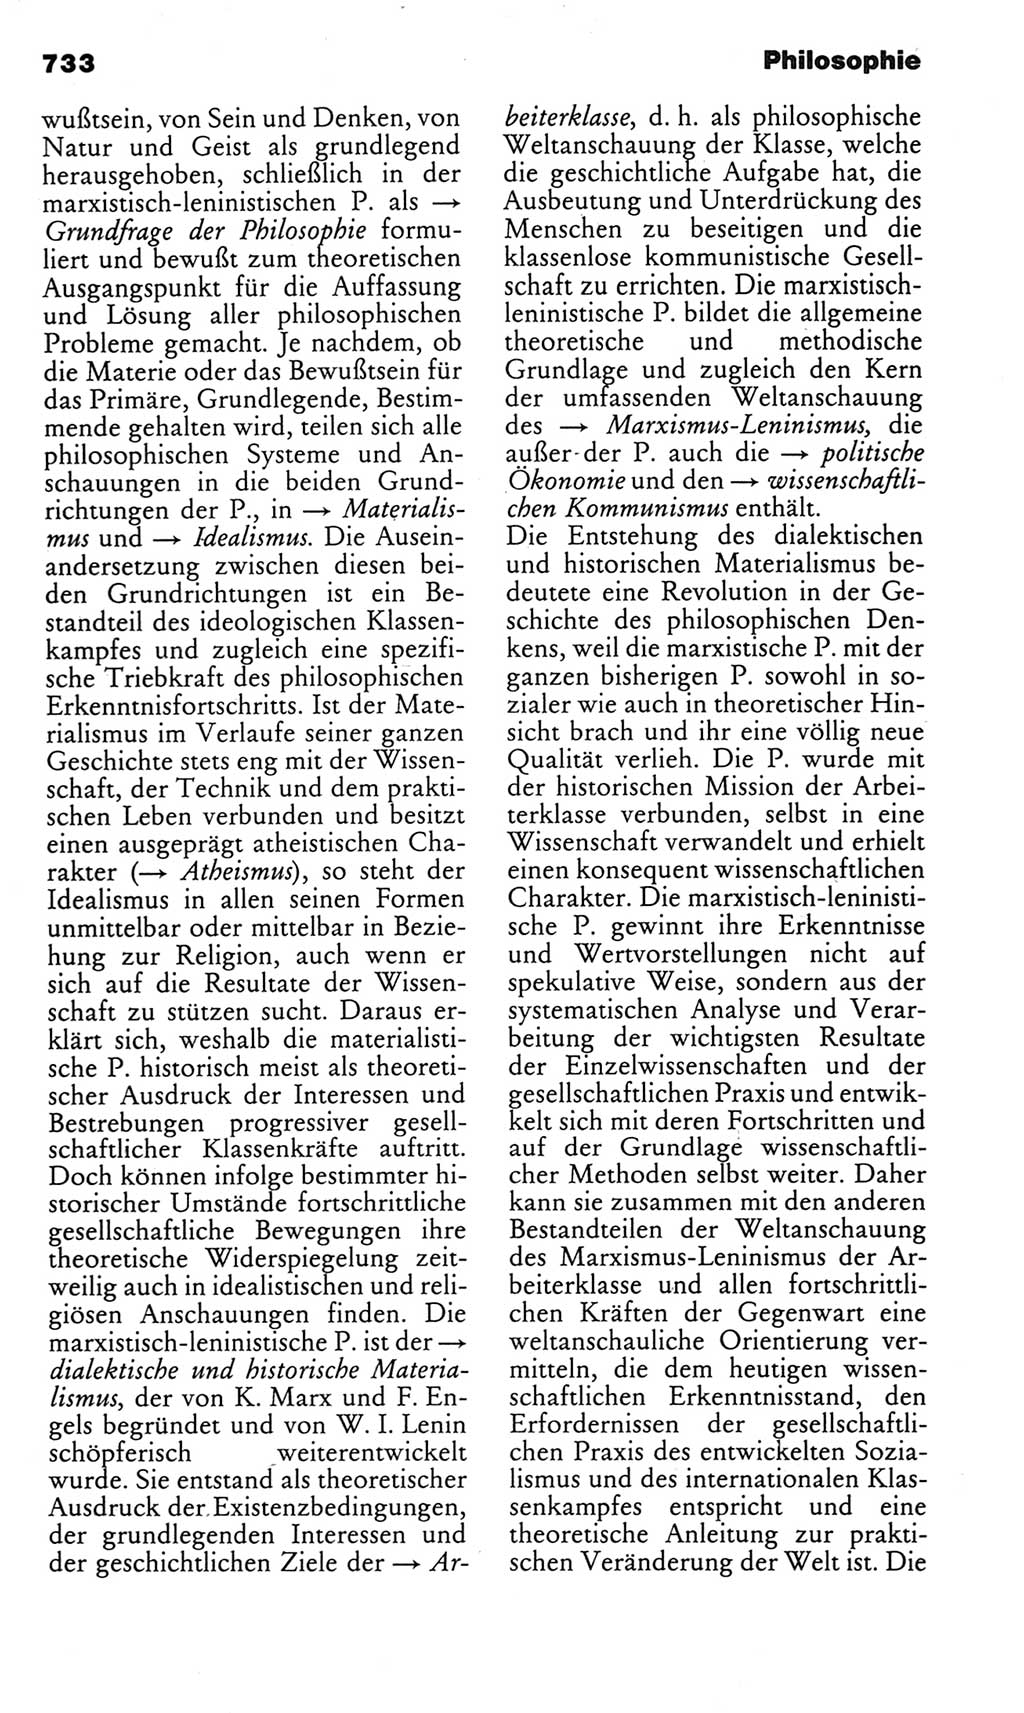 Kleines politisches Wörterbuch [Deutsche Demokratische Republik (DDR)] 1983, Seite 733 (Kl. pol. Wb. DDR 1983, S. 733)